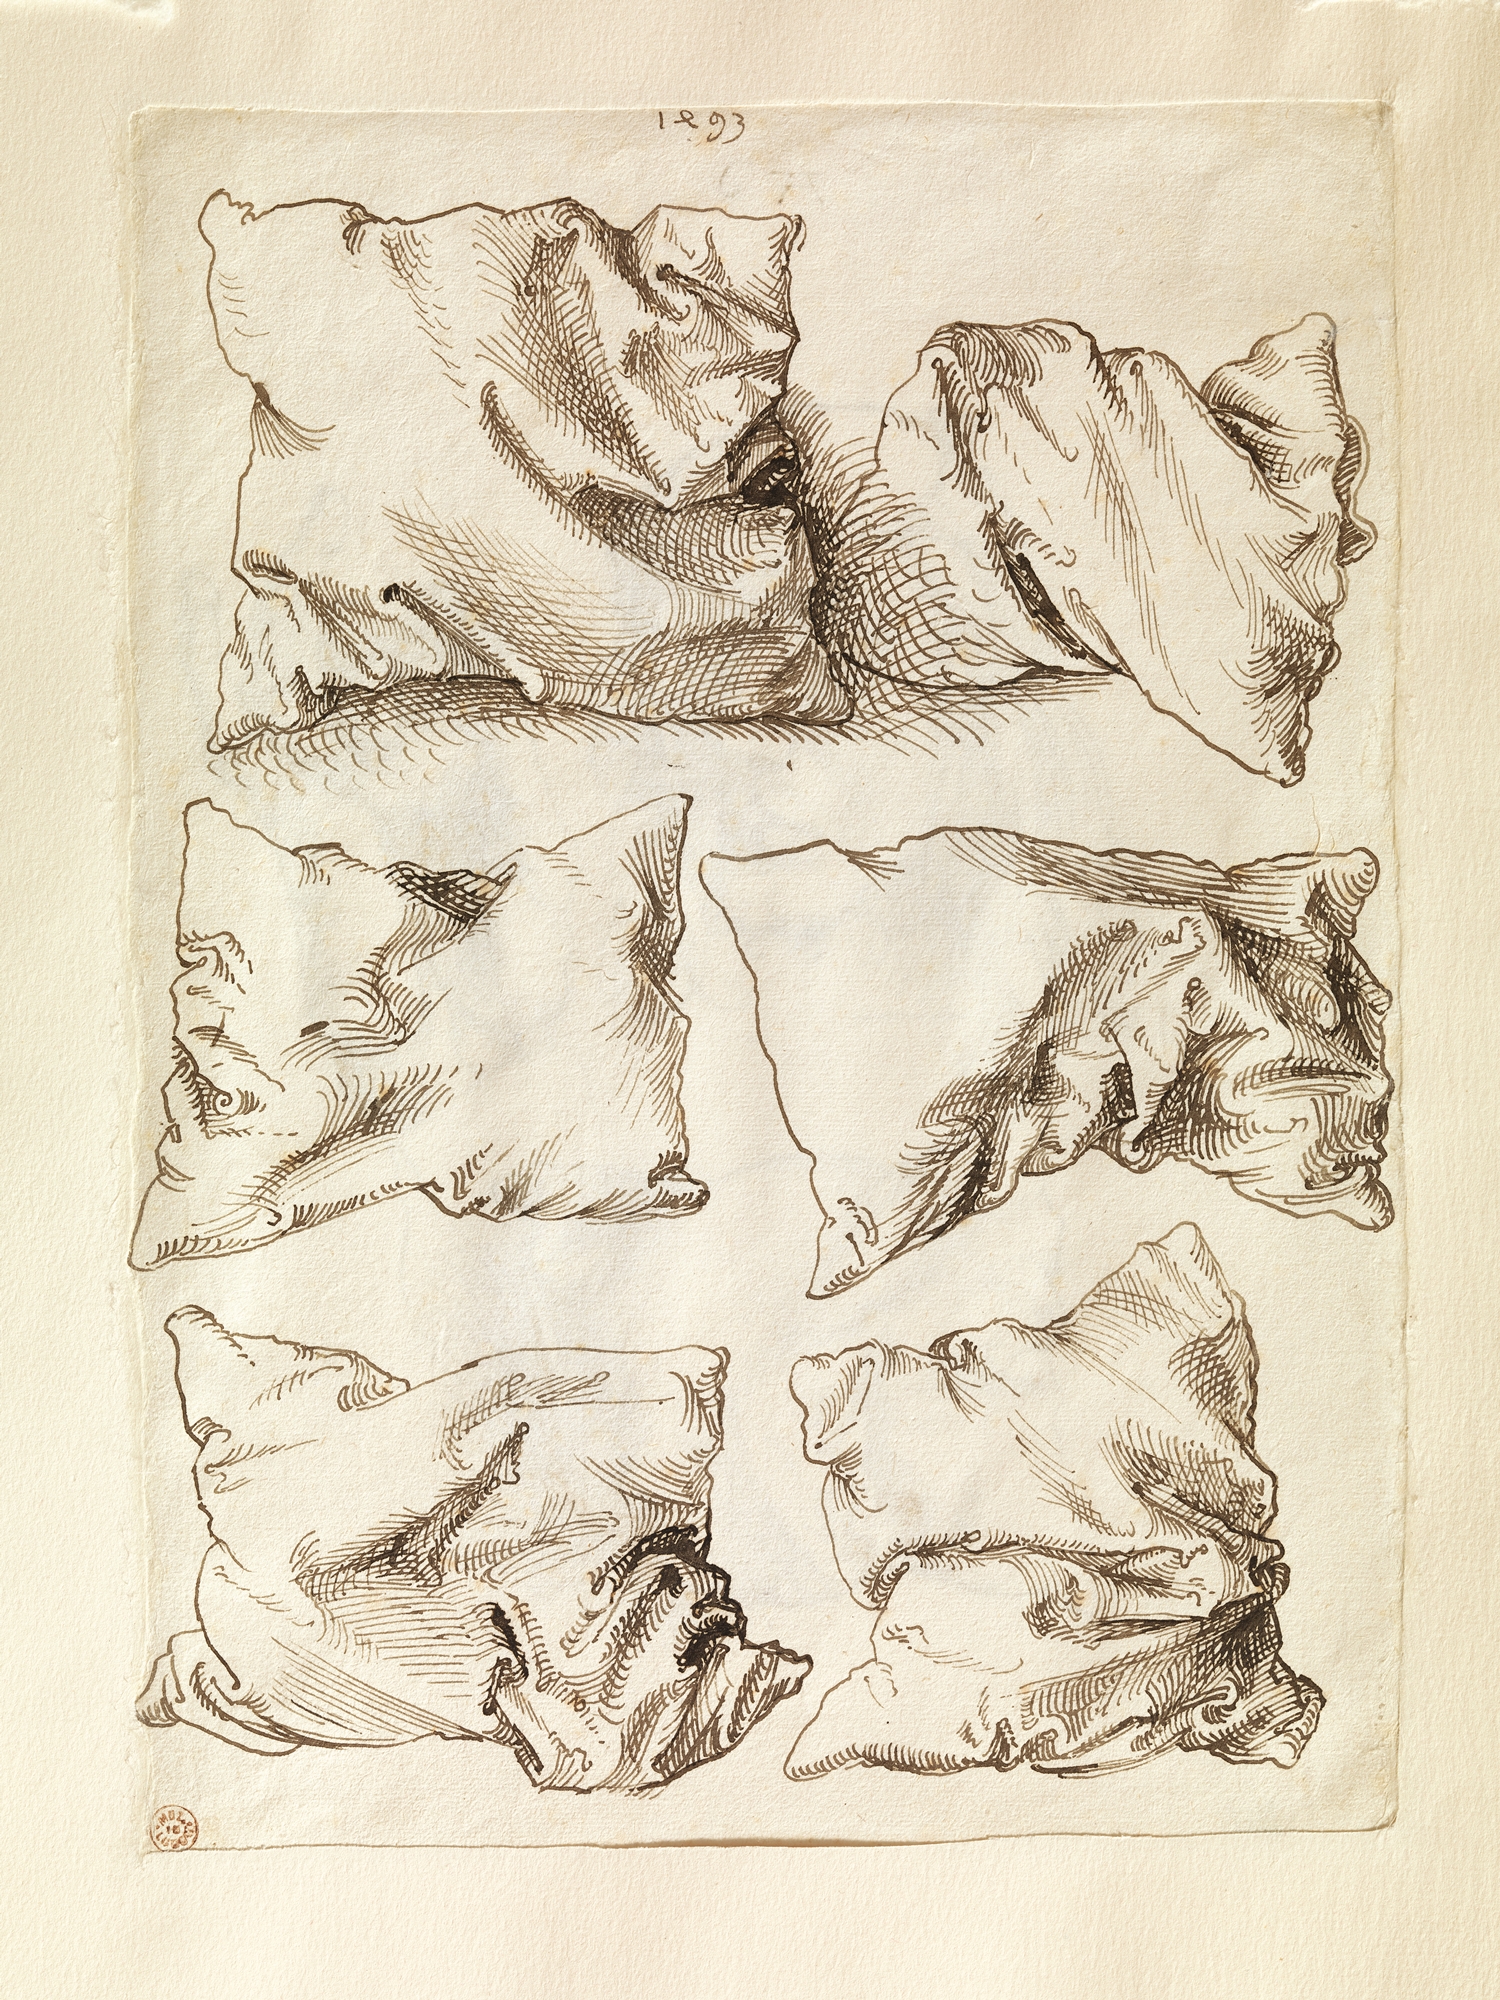 Studium sześciu poduszek by Albrecht Dürer - 1493 - 27,8 x 20,2 cm 